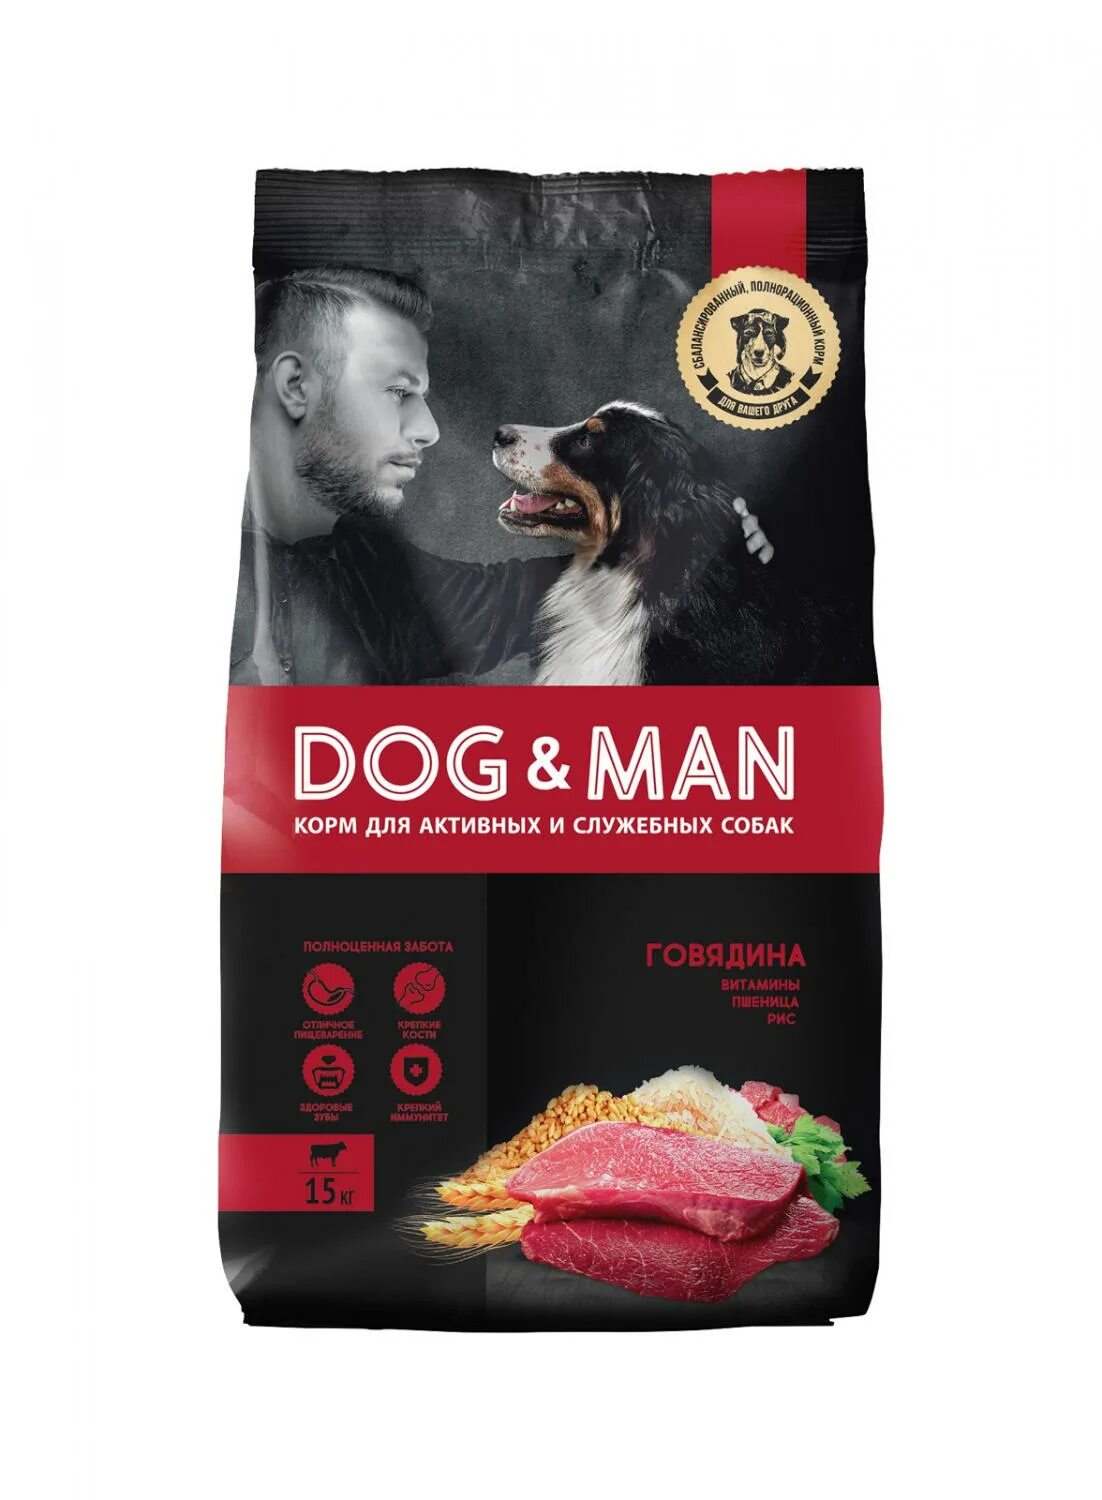 Купить корм для собаки ростов. Корм для собак Dog man 2 кг. Сухой корм Догман для собак. Dog man корм для собак 15 кг говядина. Корм для собак Dog man универсальный.